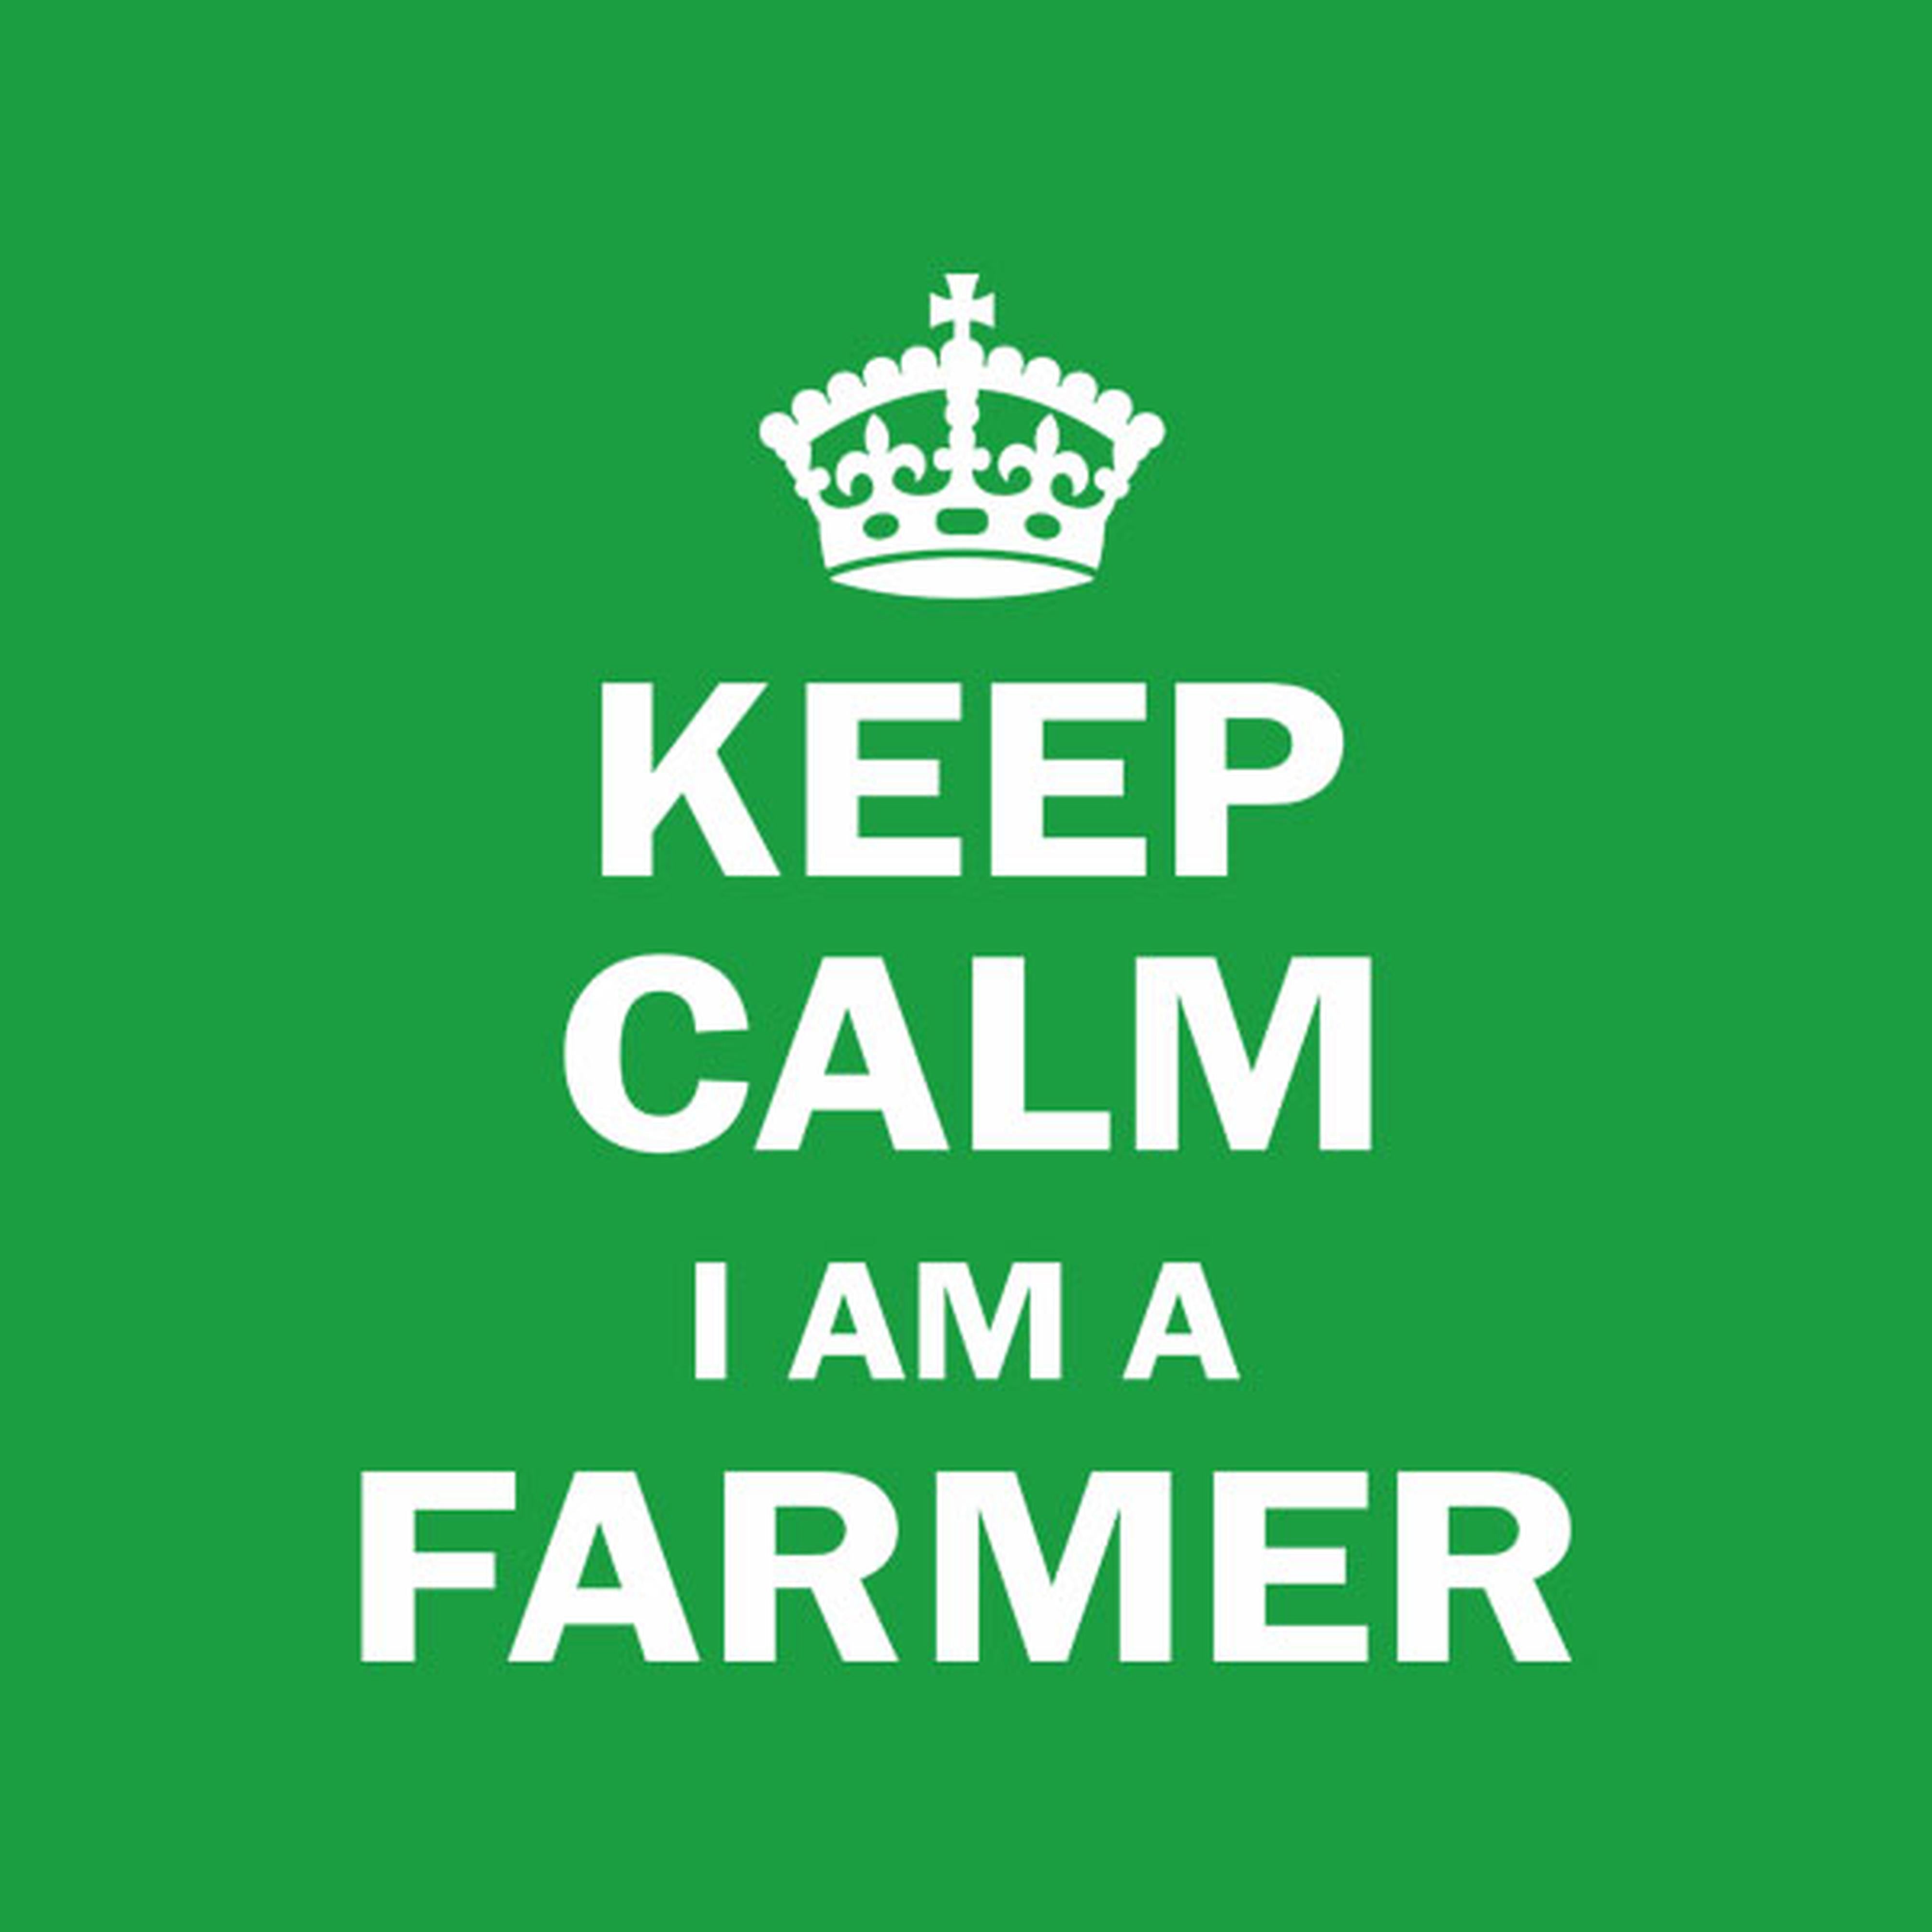 Keep calm I am a farmer - T-shirt